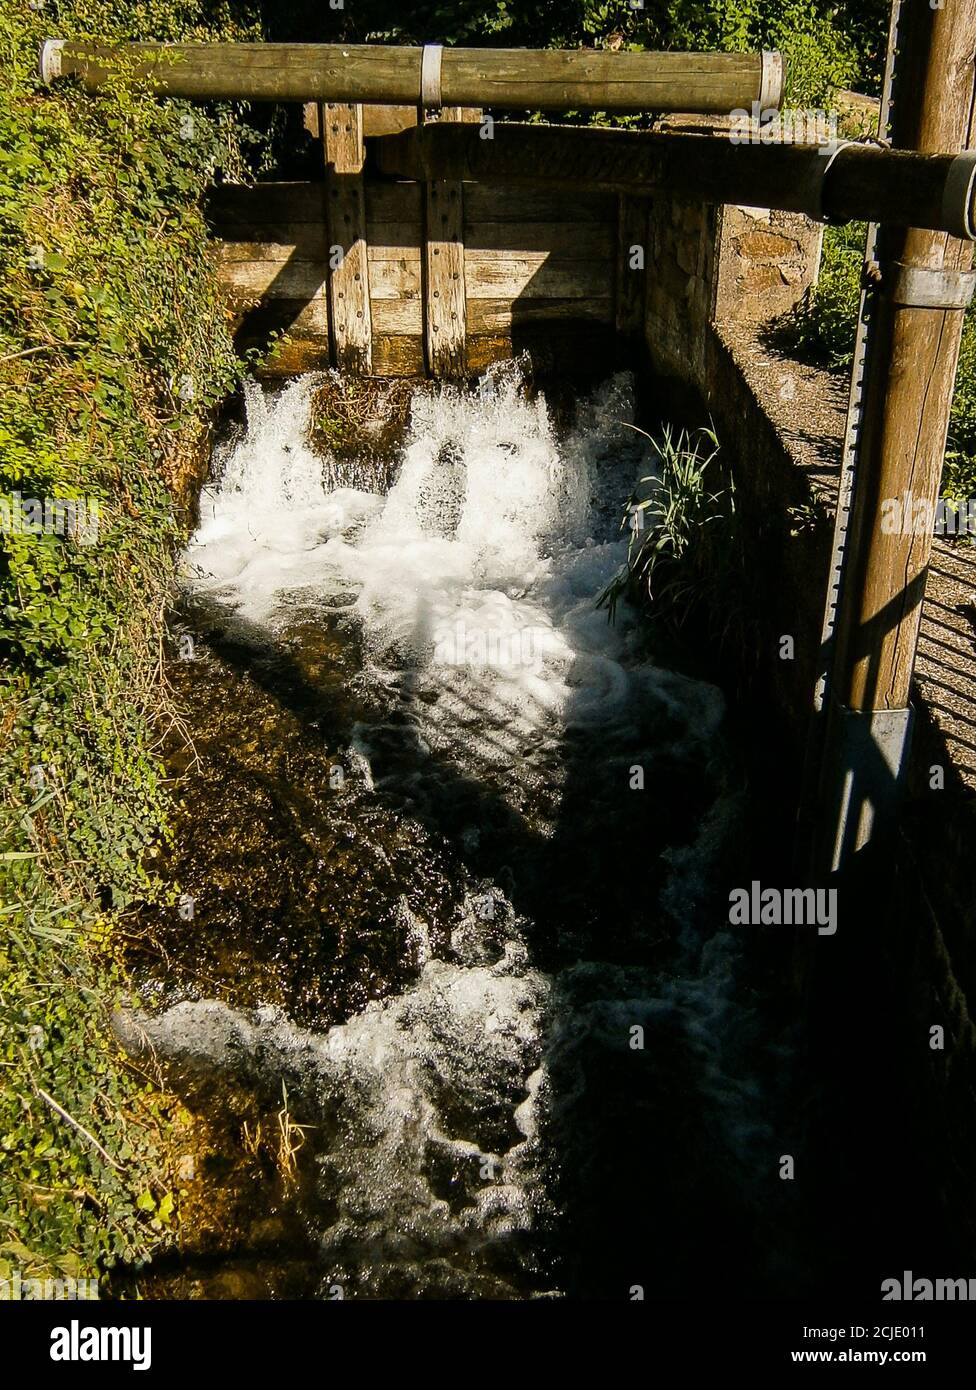 Ein Mühlbach mit einer alten Schleuse. Ihr könnt sehen, wie das Wasser durch sie fließt. Stockfoto